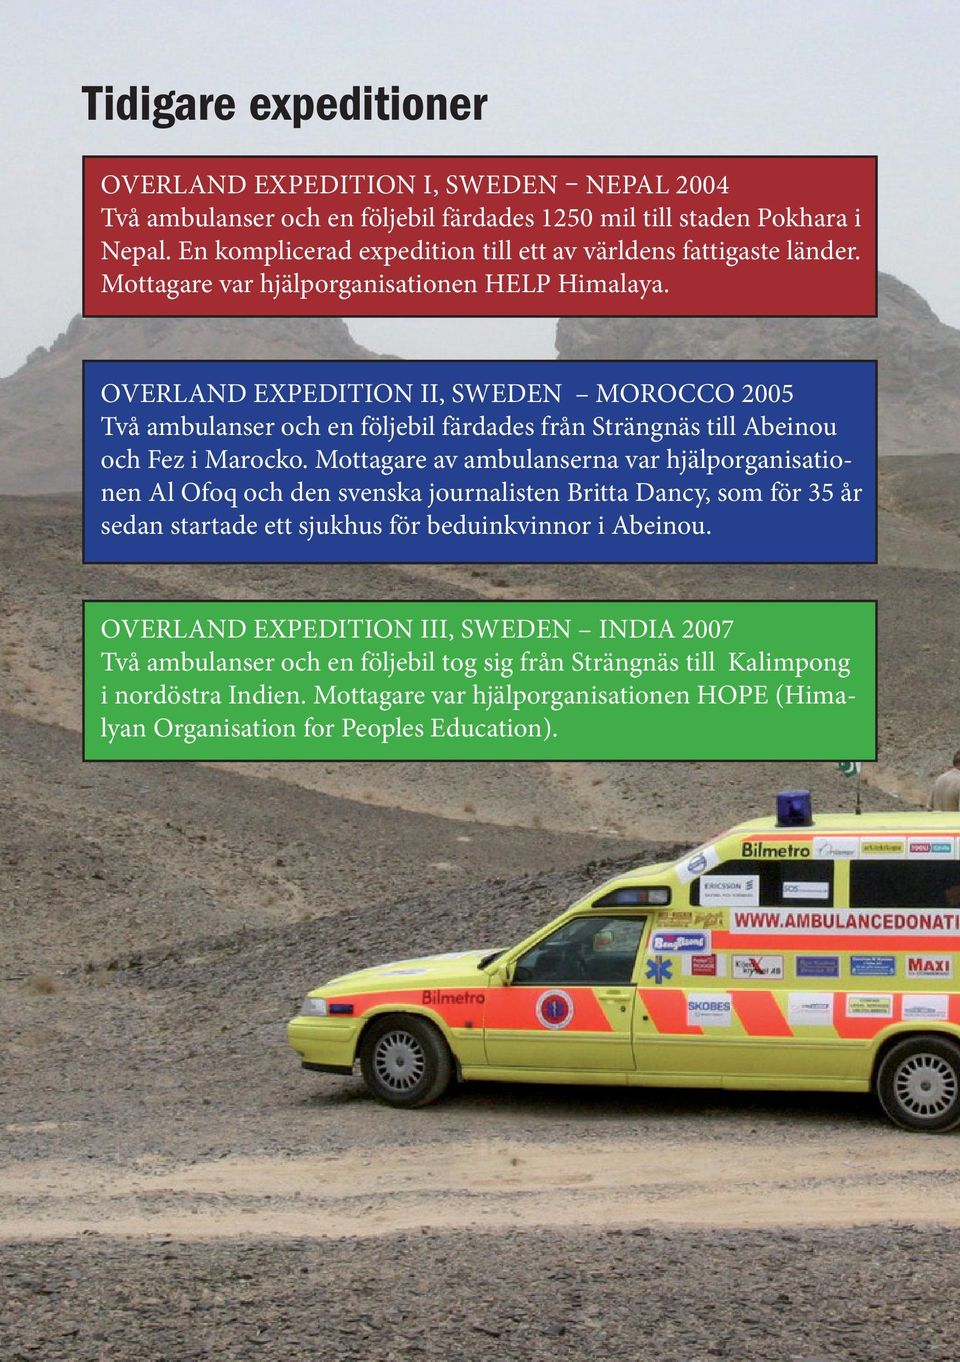 OVERLAND EXPEDITION II, SWEDEN MOROCCO 2005 Två ambulanser och en följebil färdades från Strängnäs till Abeinou och Fez i Marocko.